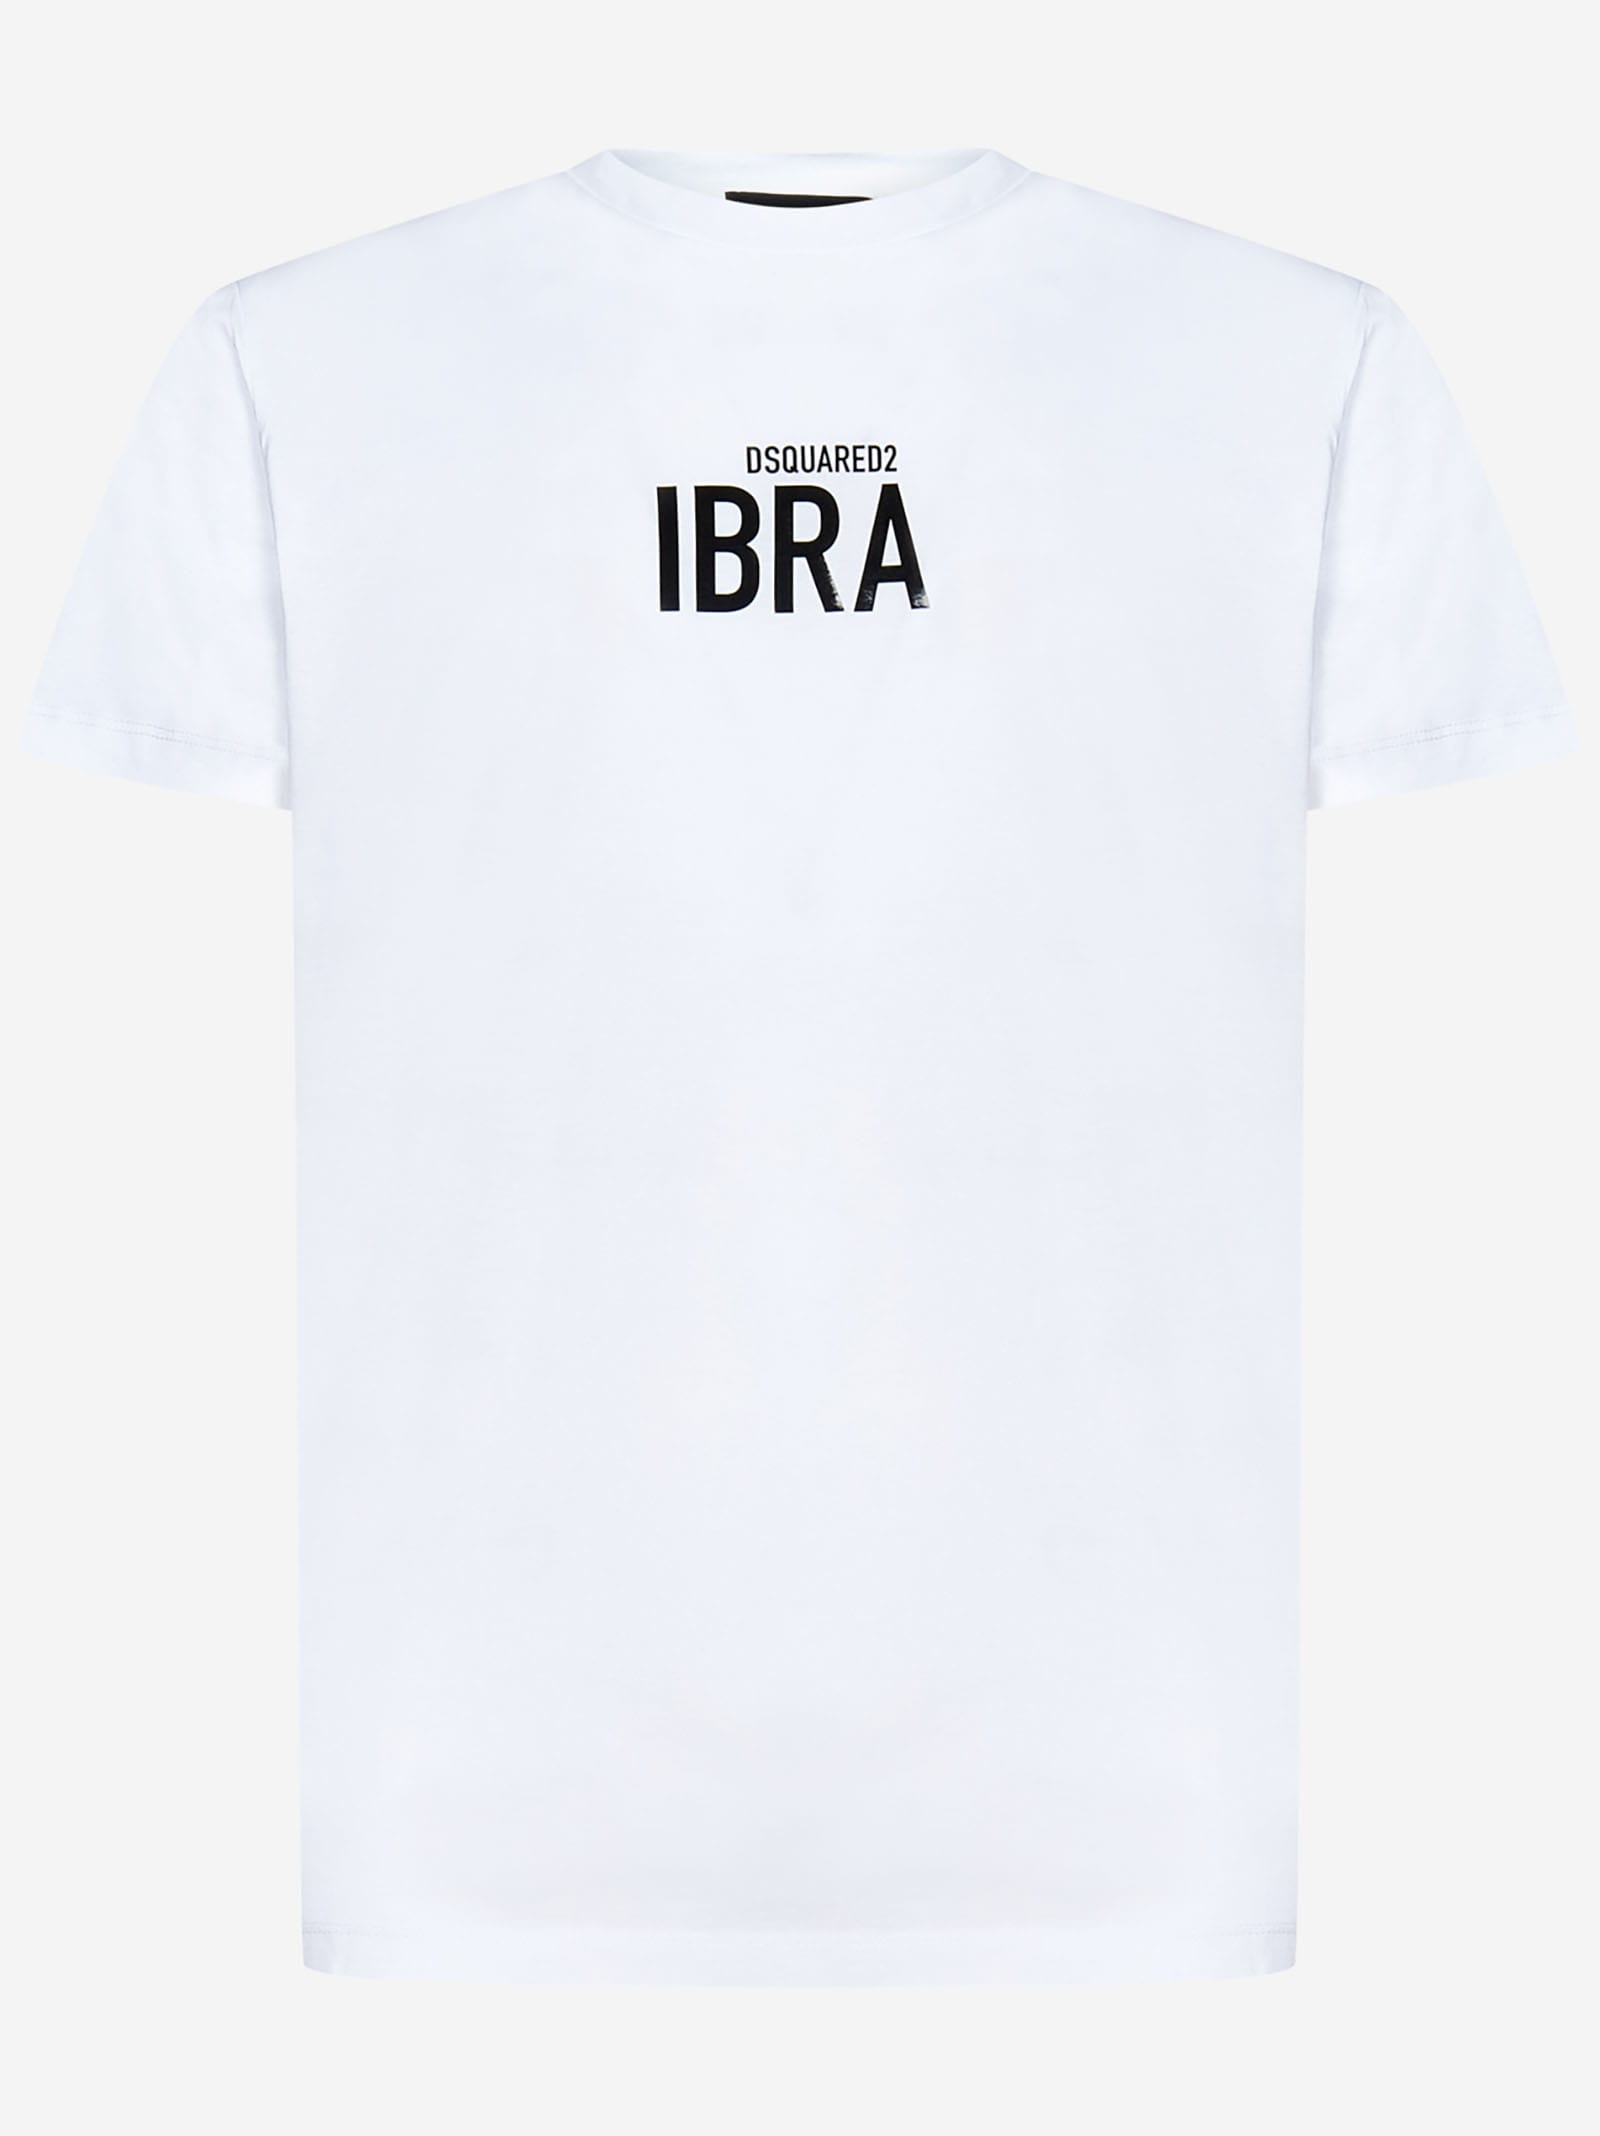 Dsquared2 Ibra Black T-shirt